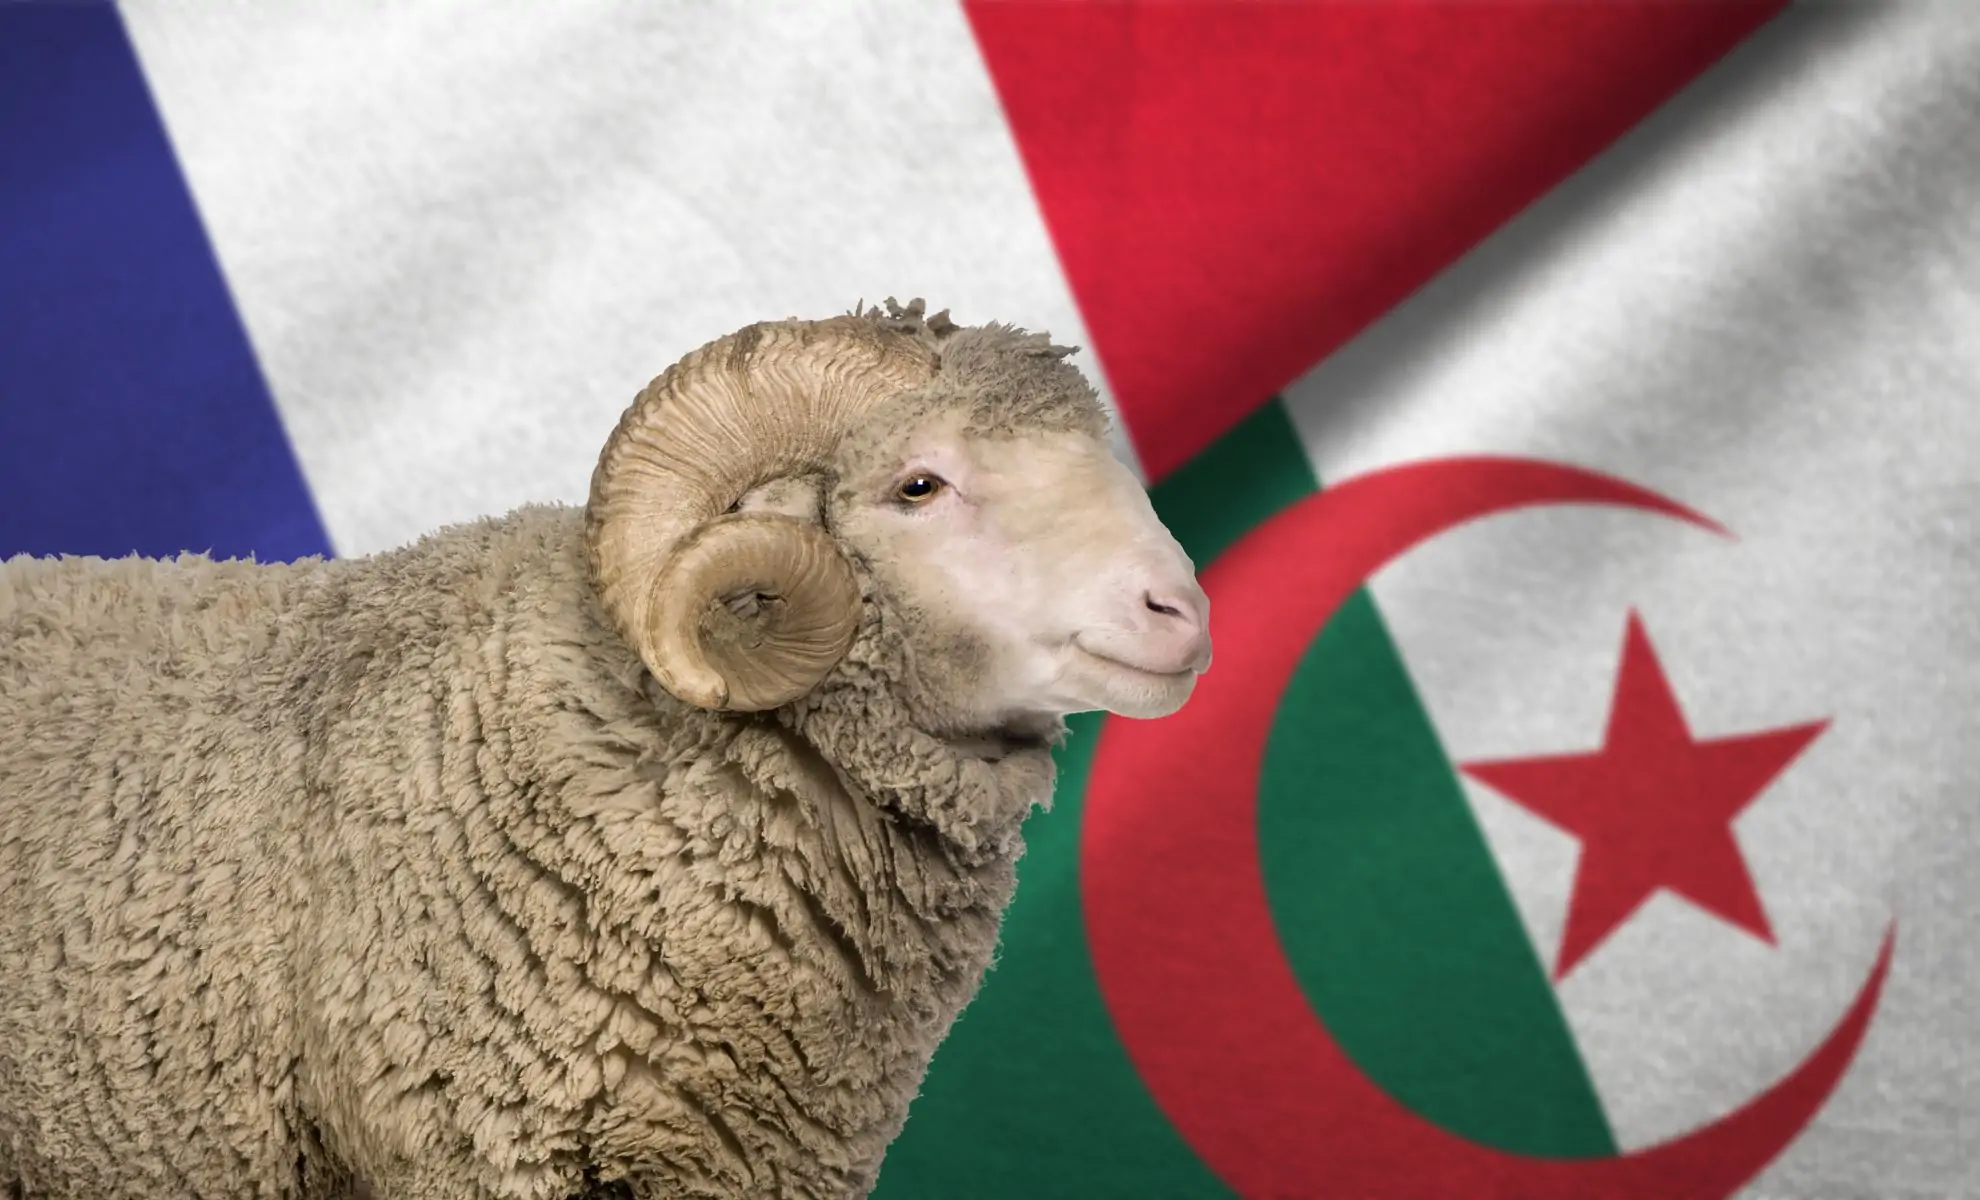 mouton de l'aïd el-kebir sur fond de drapeaux de l'Algérie et de la France